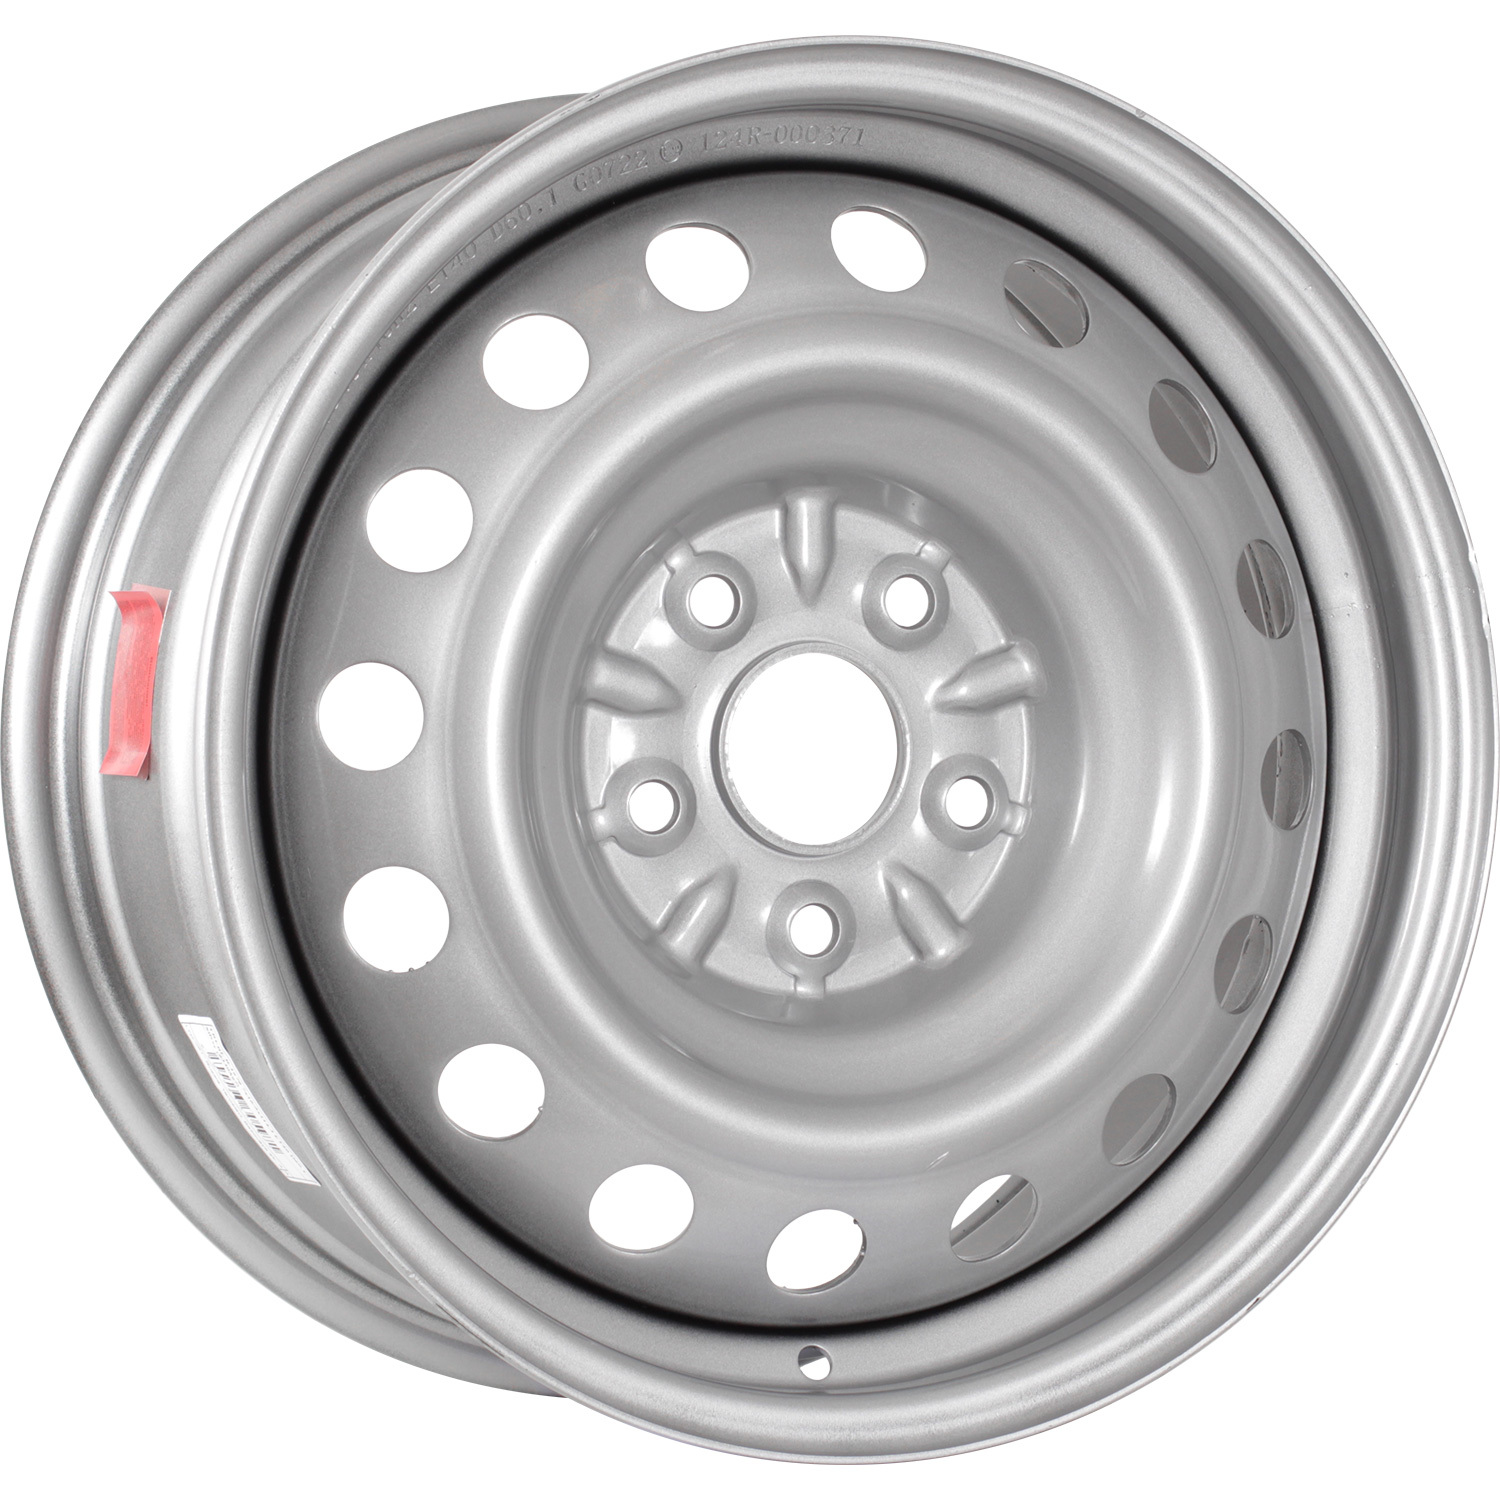 Колесный диск Trebl R-1679 Trebl 7x16/5x114.3 D60.1 ET40 Silver колесный диск replica fr vv 105t 7x16 5x120 d65 1 et40 silver